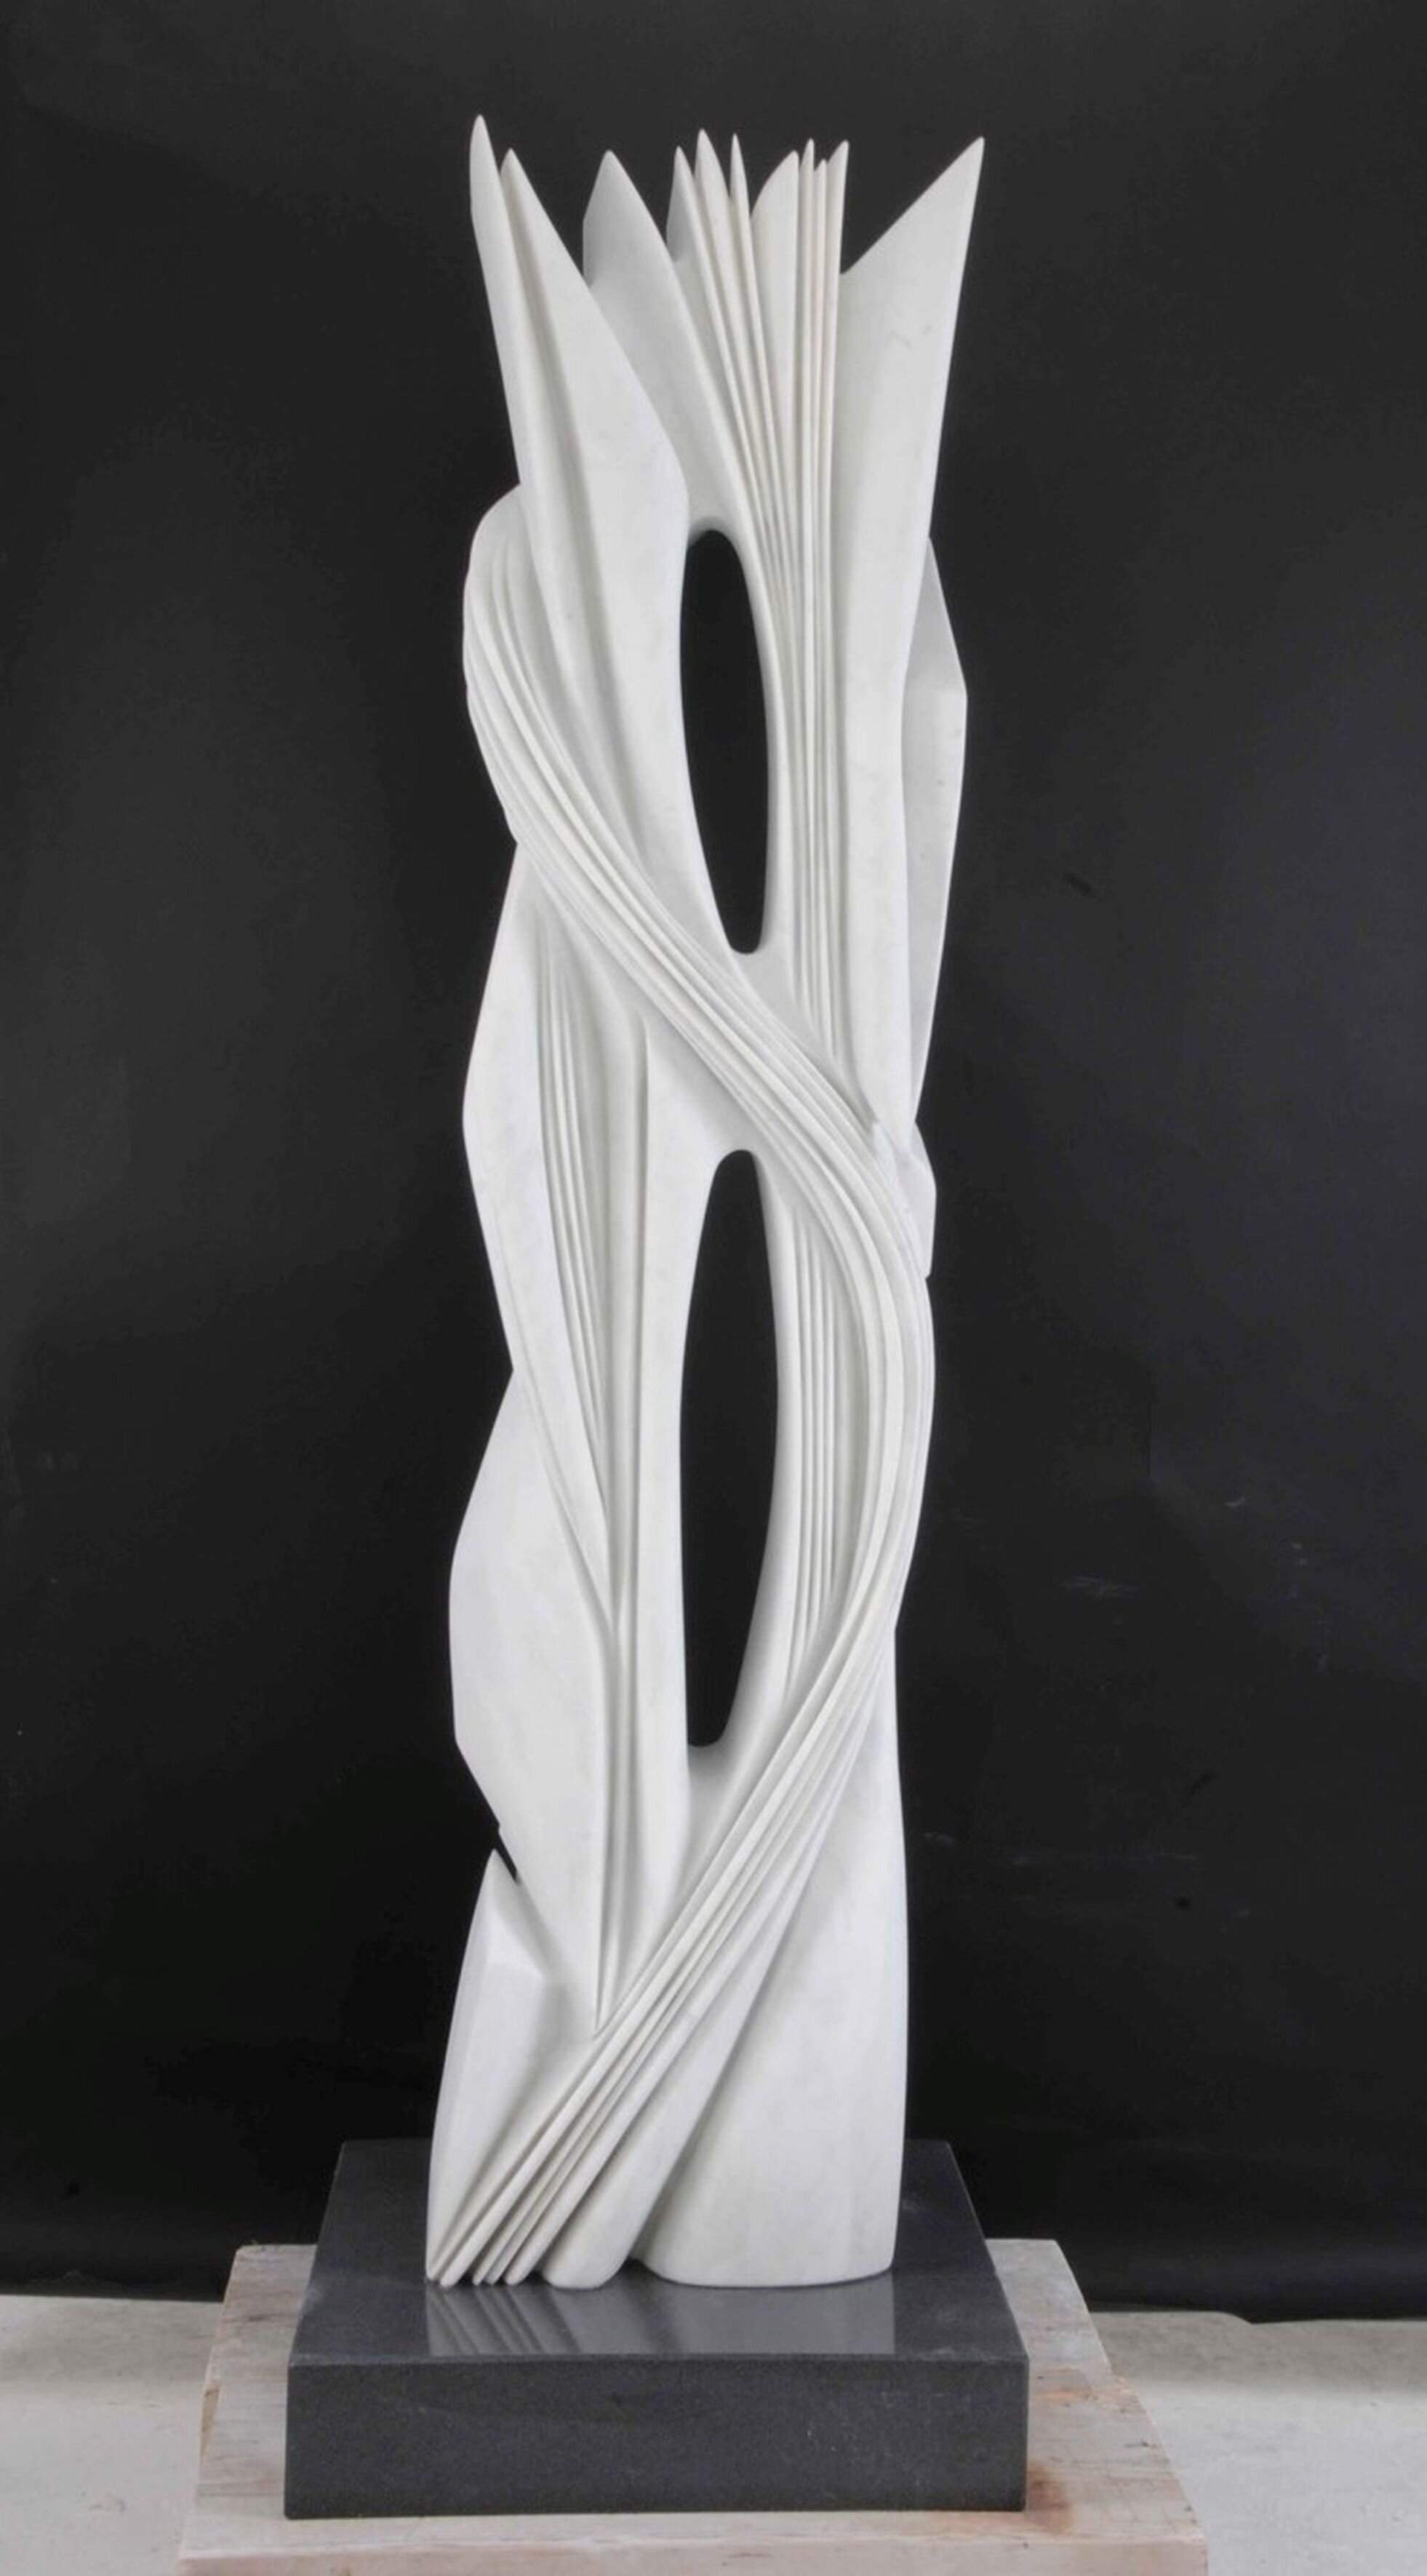 Pablo Atchugarry, Continuacion del Pensamiento, 2011. Carrara marble, 203 x 44 x 31 cm